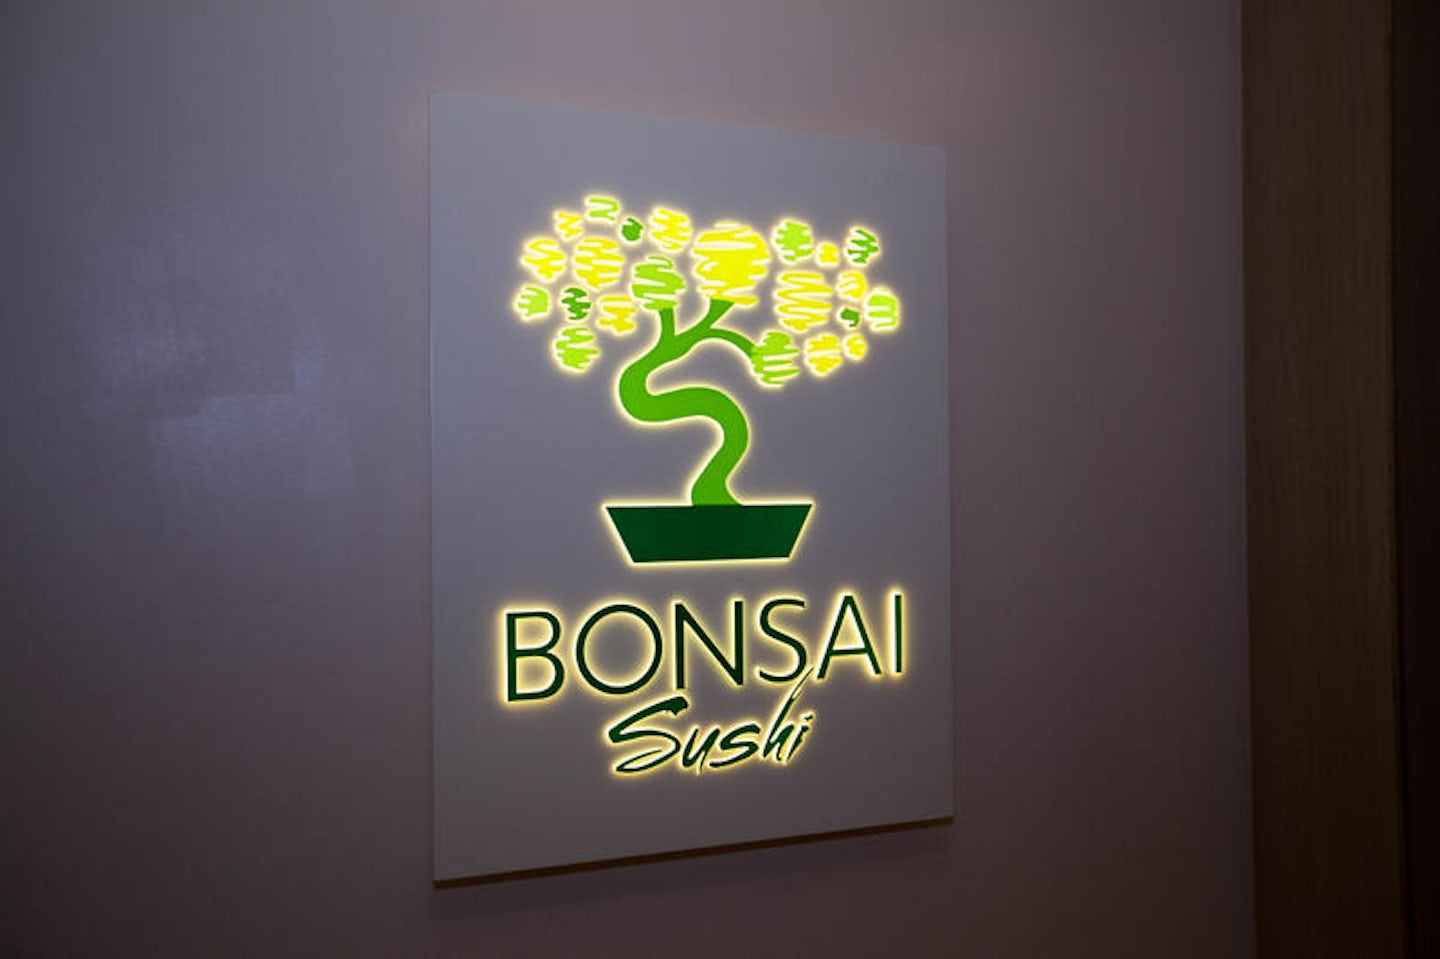 Bonsai Sushi on Carnival Sunshine